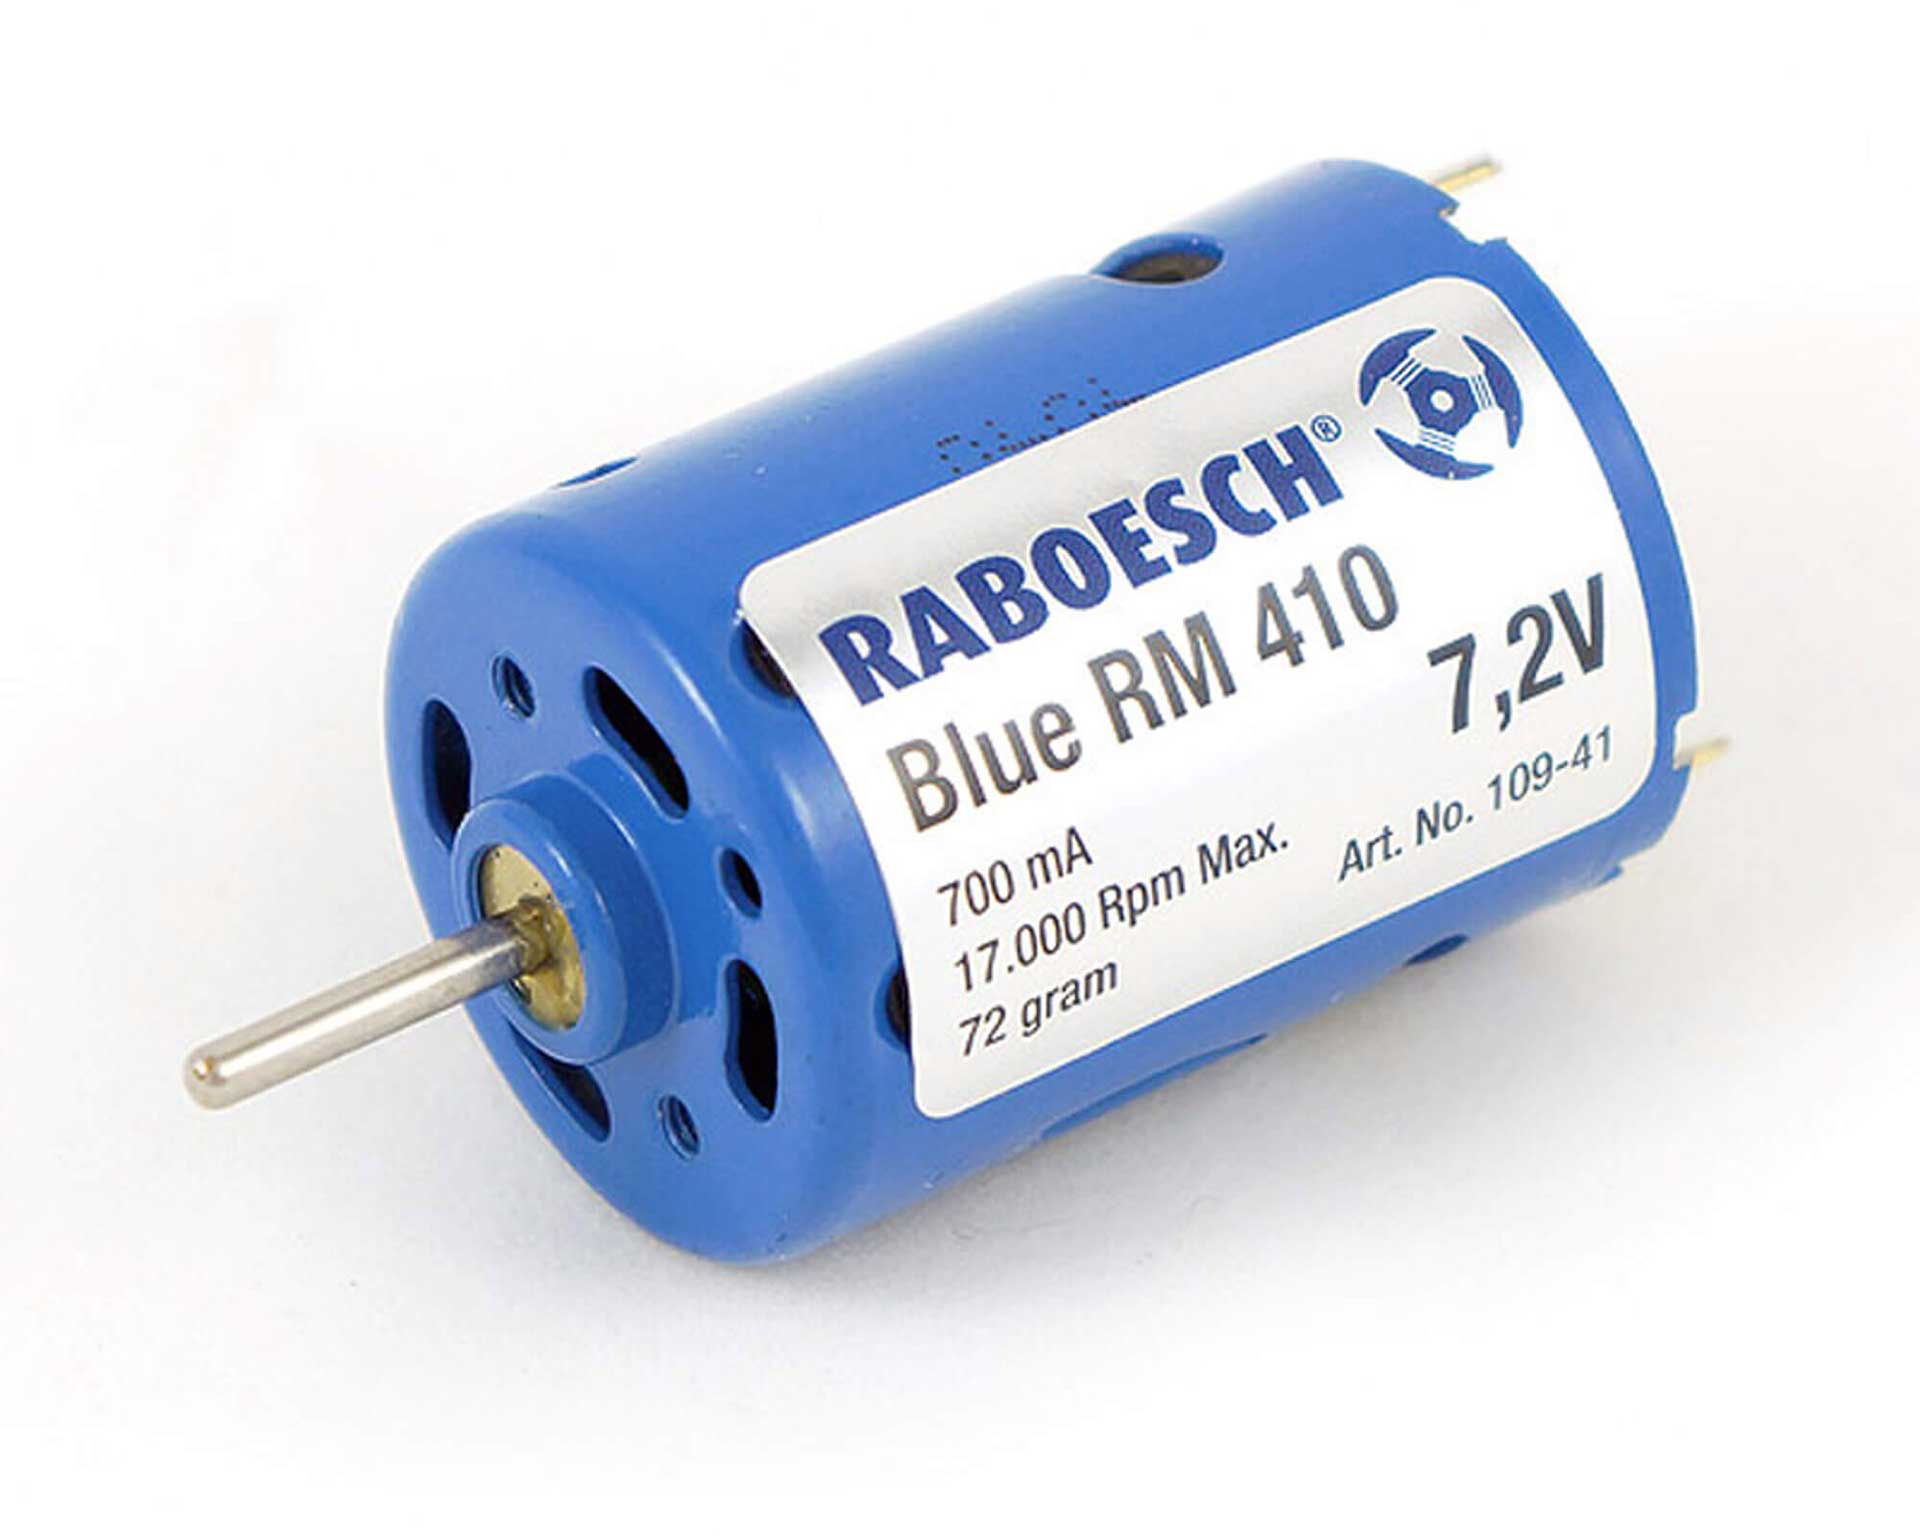 RABOESCH Moteur électrique Bleu RM-410 7,2V